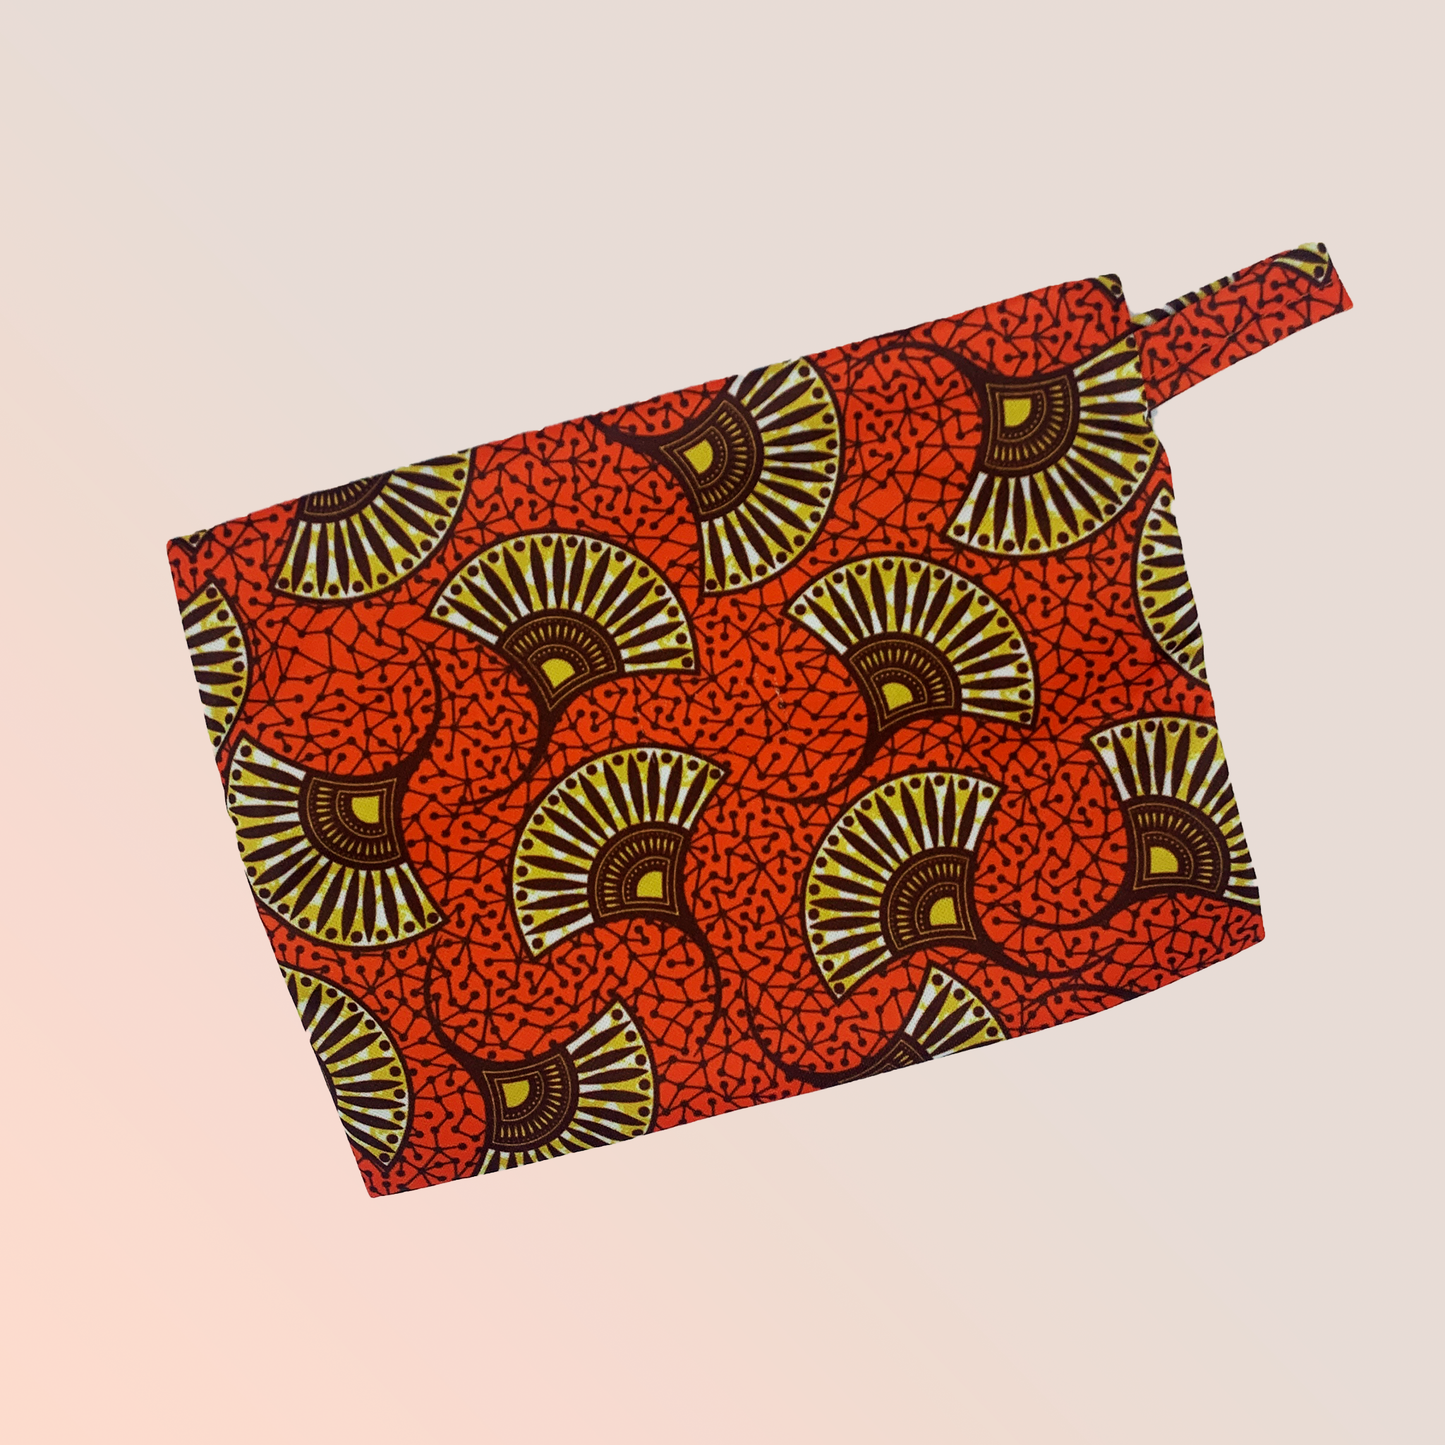  Pochette imperméable de transport design orange exotic à tirette pour ranger tes serviettes hygiéniques, cups ou culottes menstruelles - Pussyfy